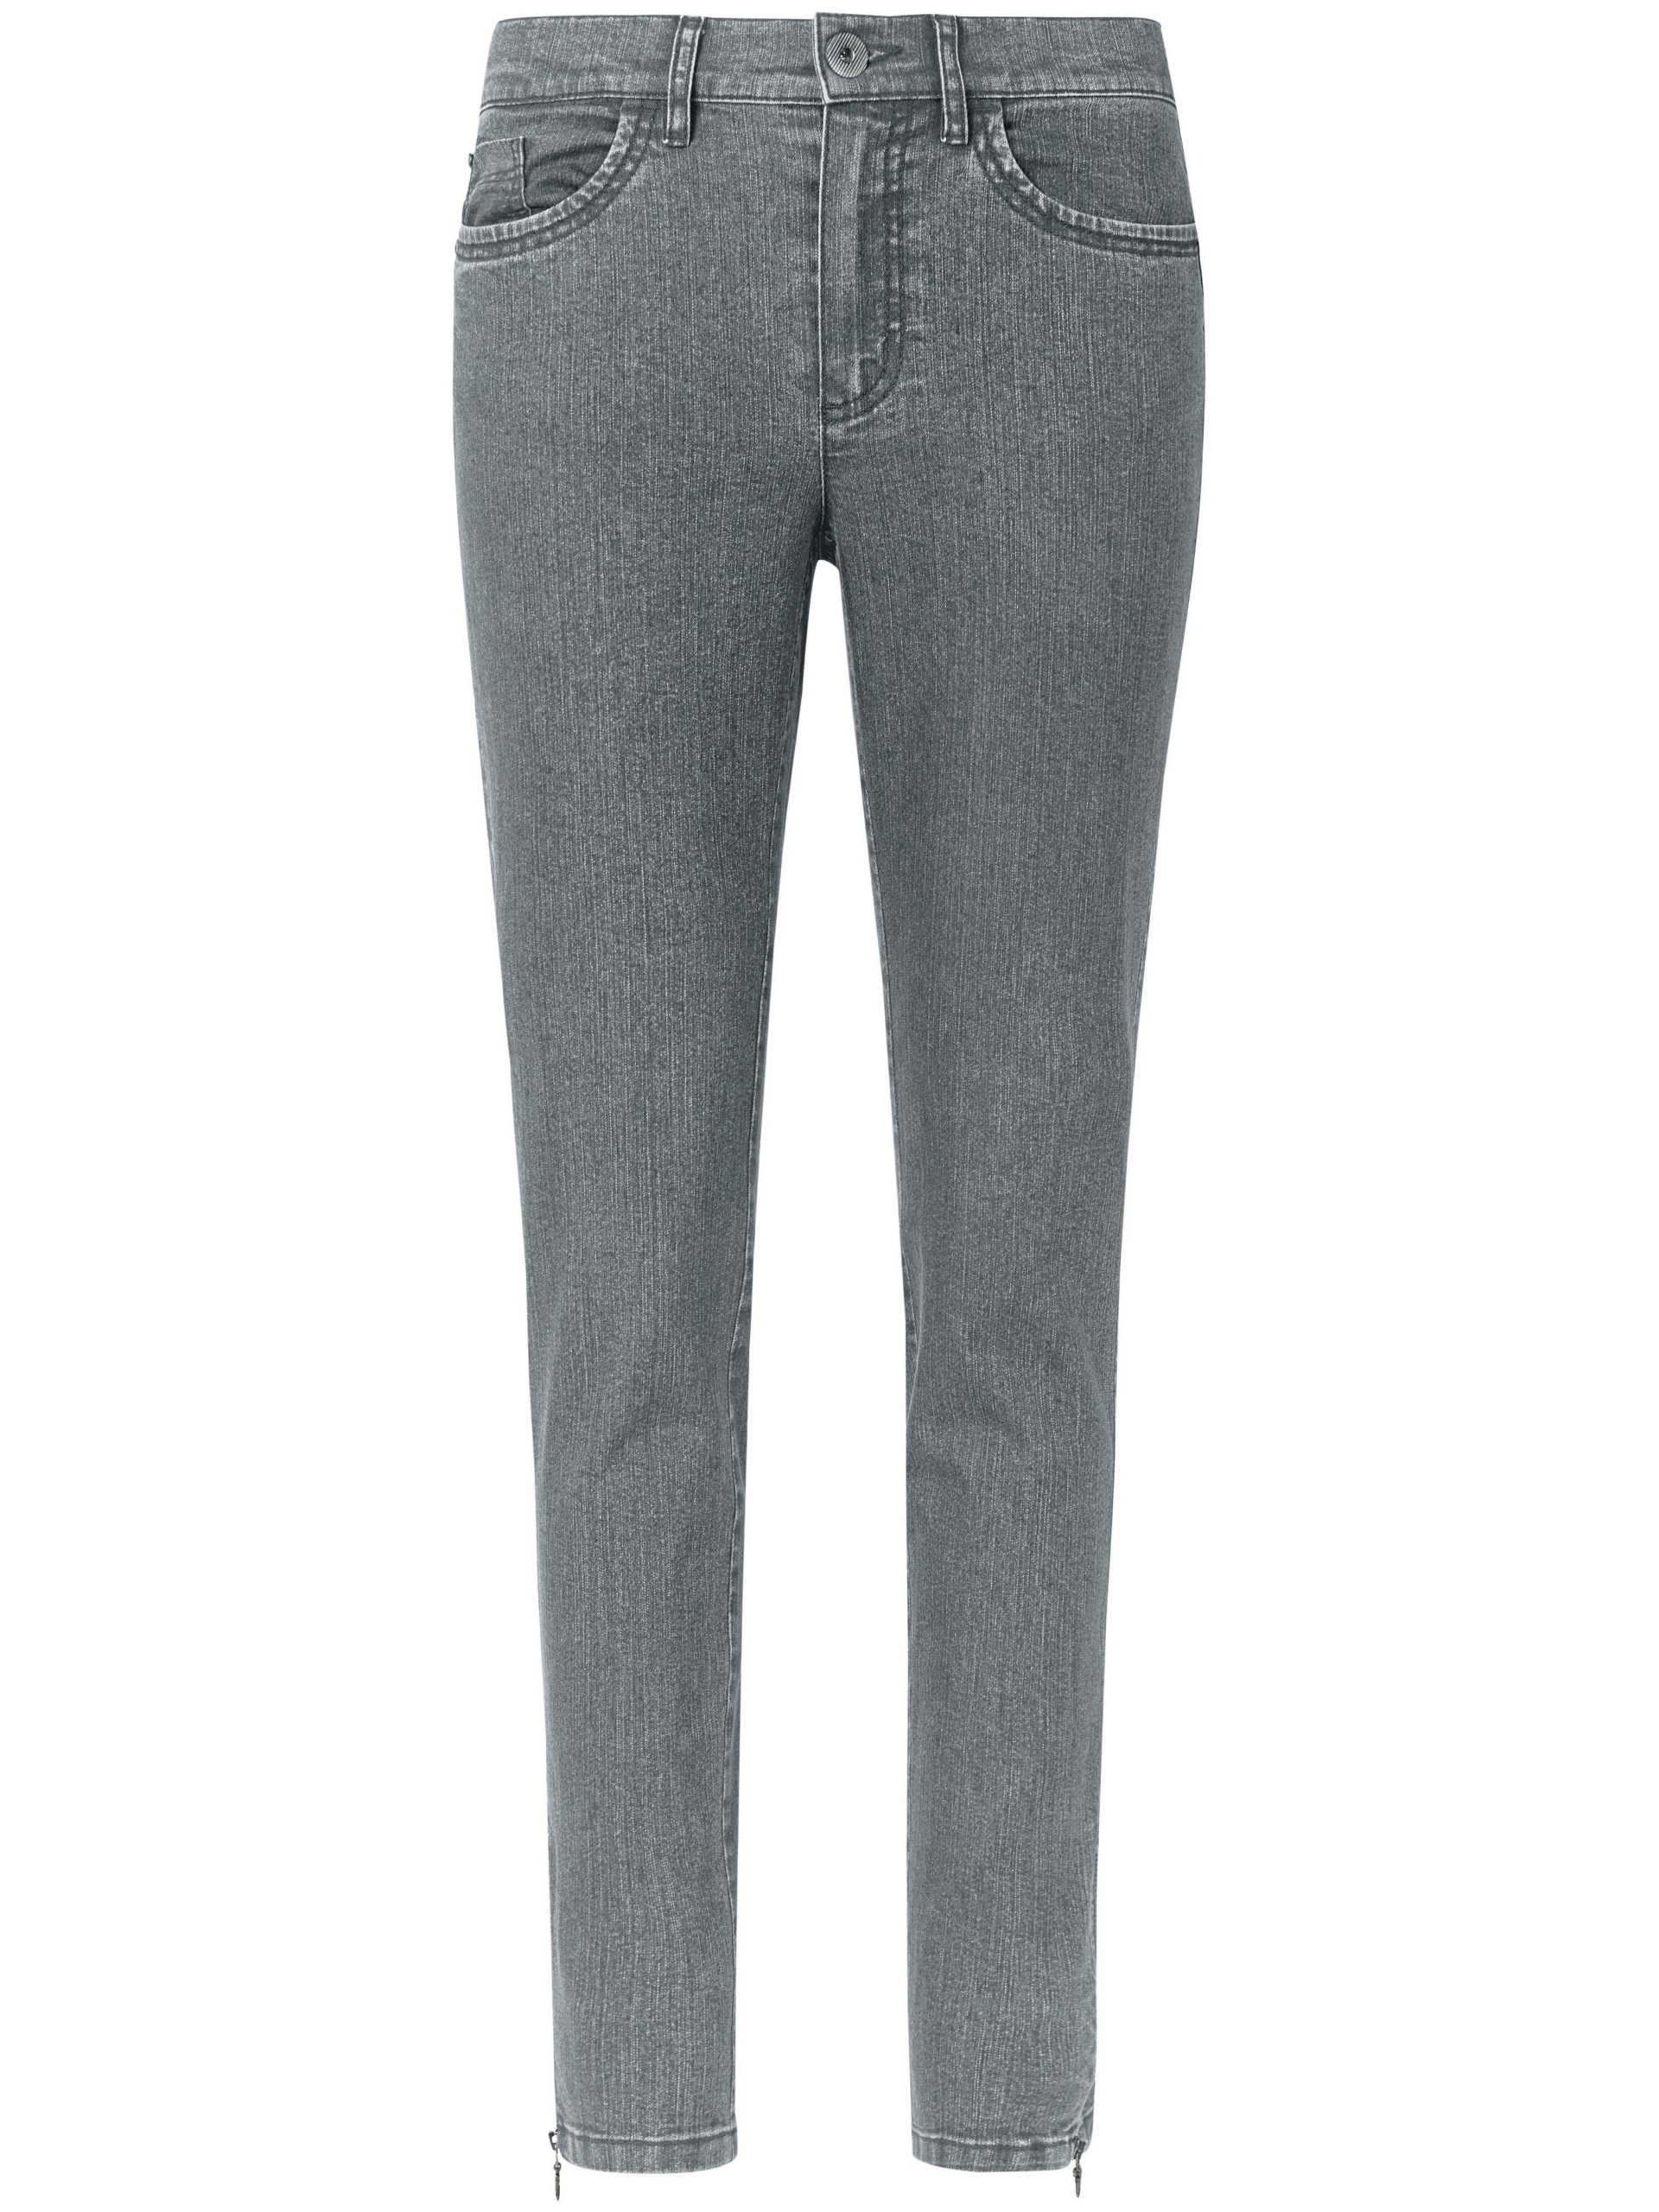 Enkellange jeans Van DAY.LIKE grijs Kopen